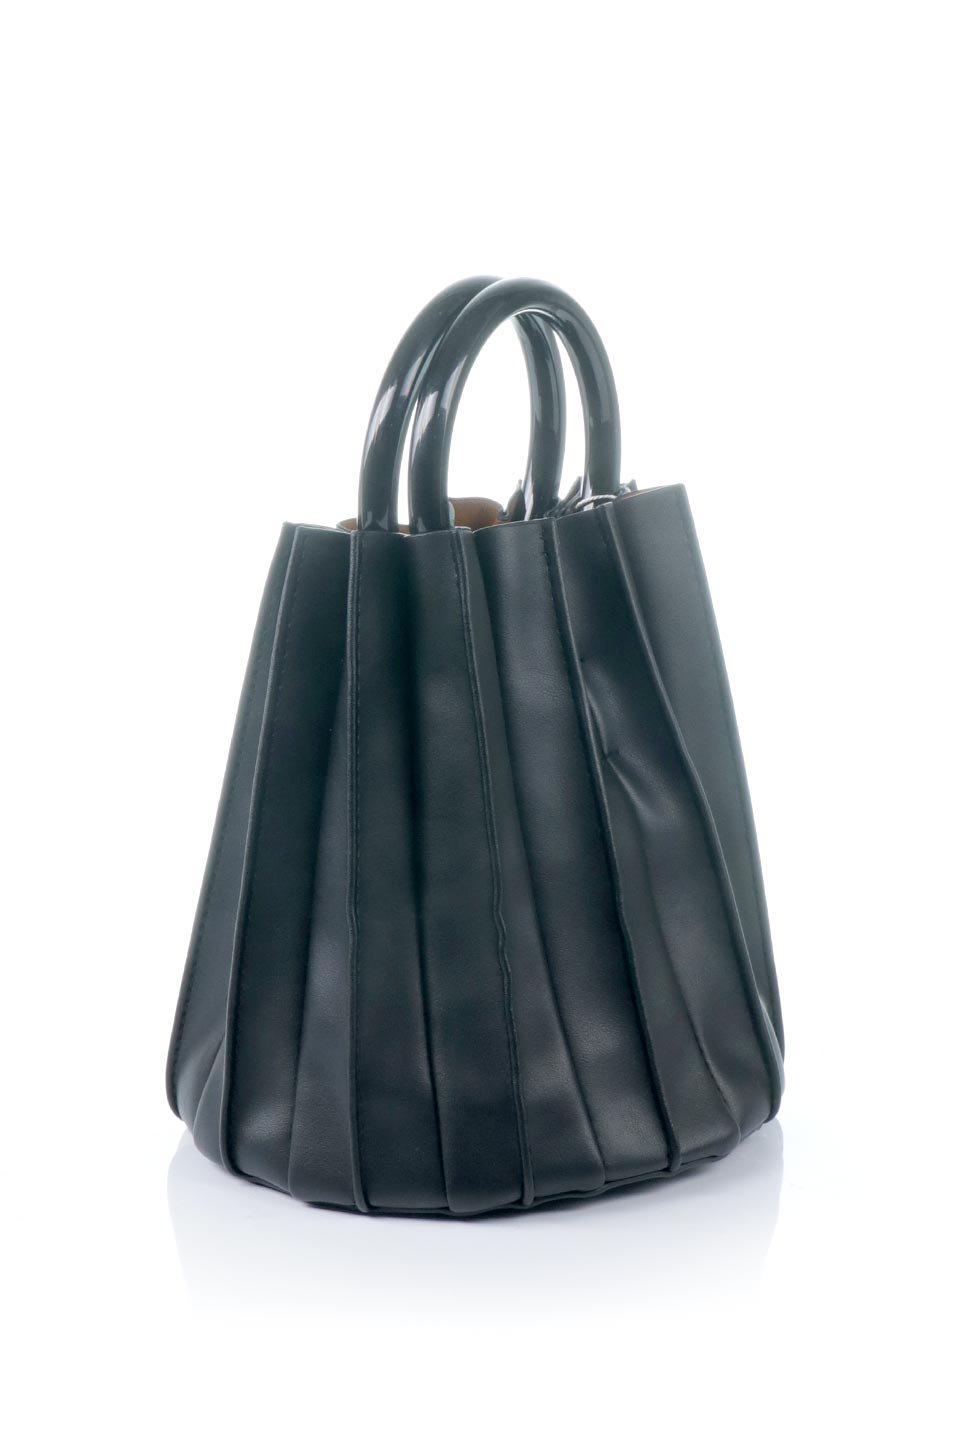 meliebiancoのLily(Black)アコーディオンプリーツ・バケツバッグ/海外ファッション好きにオススメのインポートバッグとかばん、MelieBianco（メリービアンコ）のバッグやハンドバッグ。ビーガンレザーのアコーディオンプリーツが特徴のバケツ型バッグ。ハンドバッグとしてもストラップを付けてショルダーバッグとしても使用できます。/thumb-3